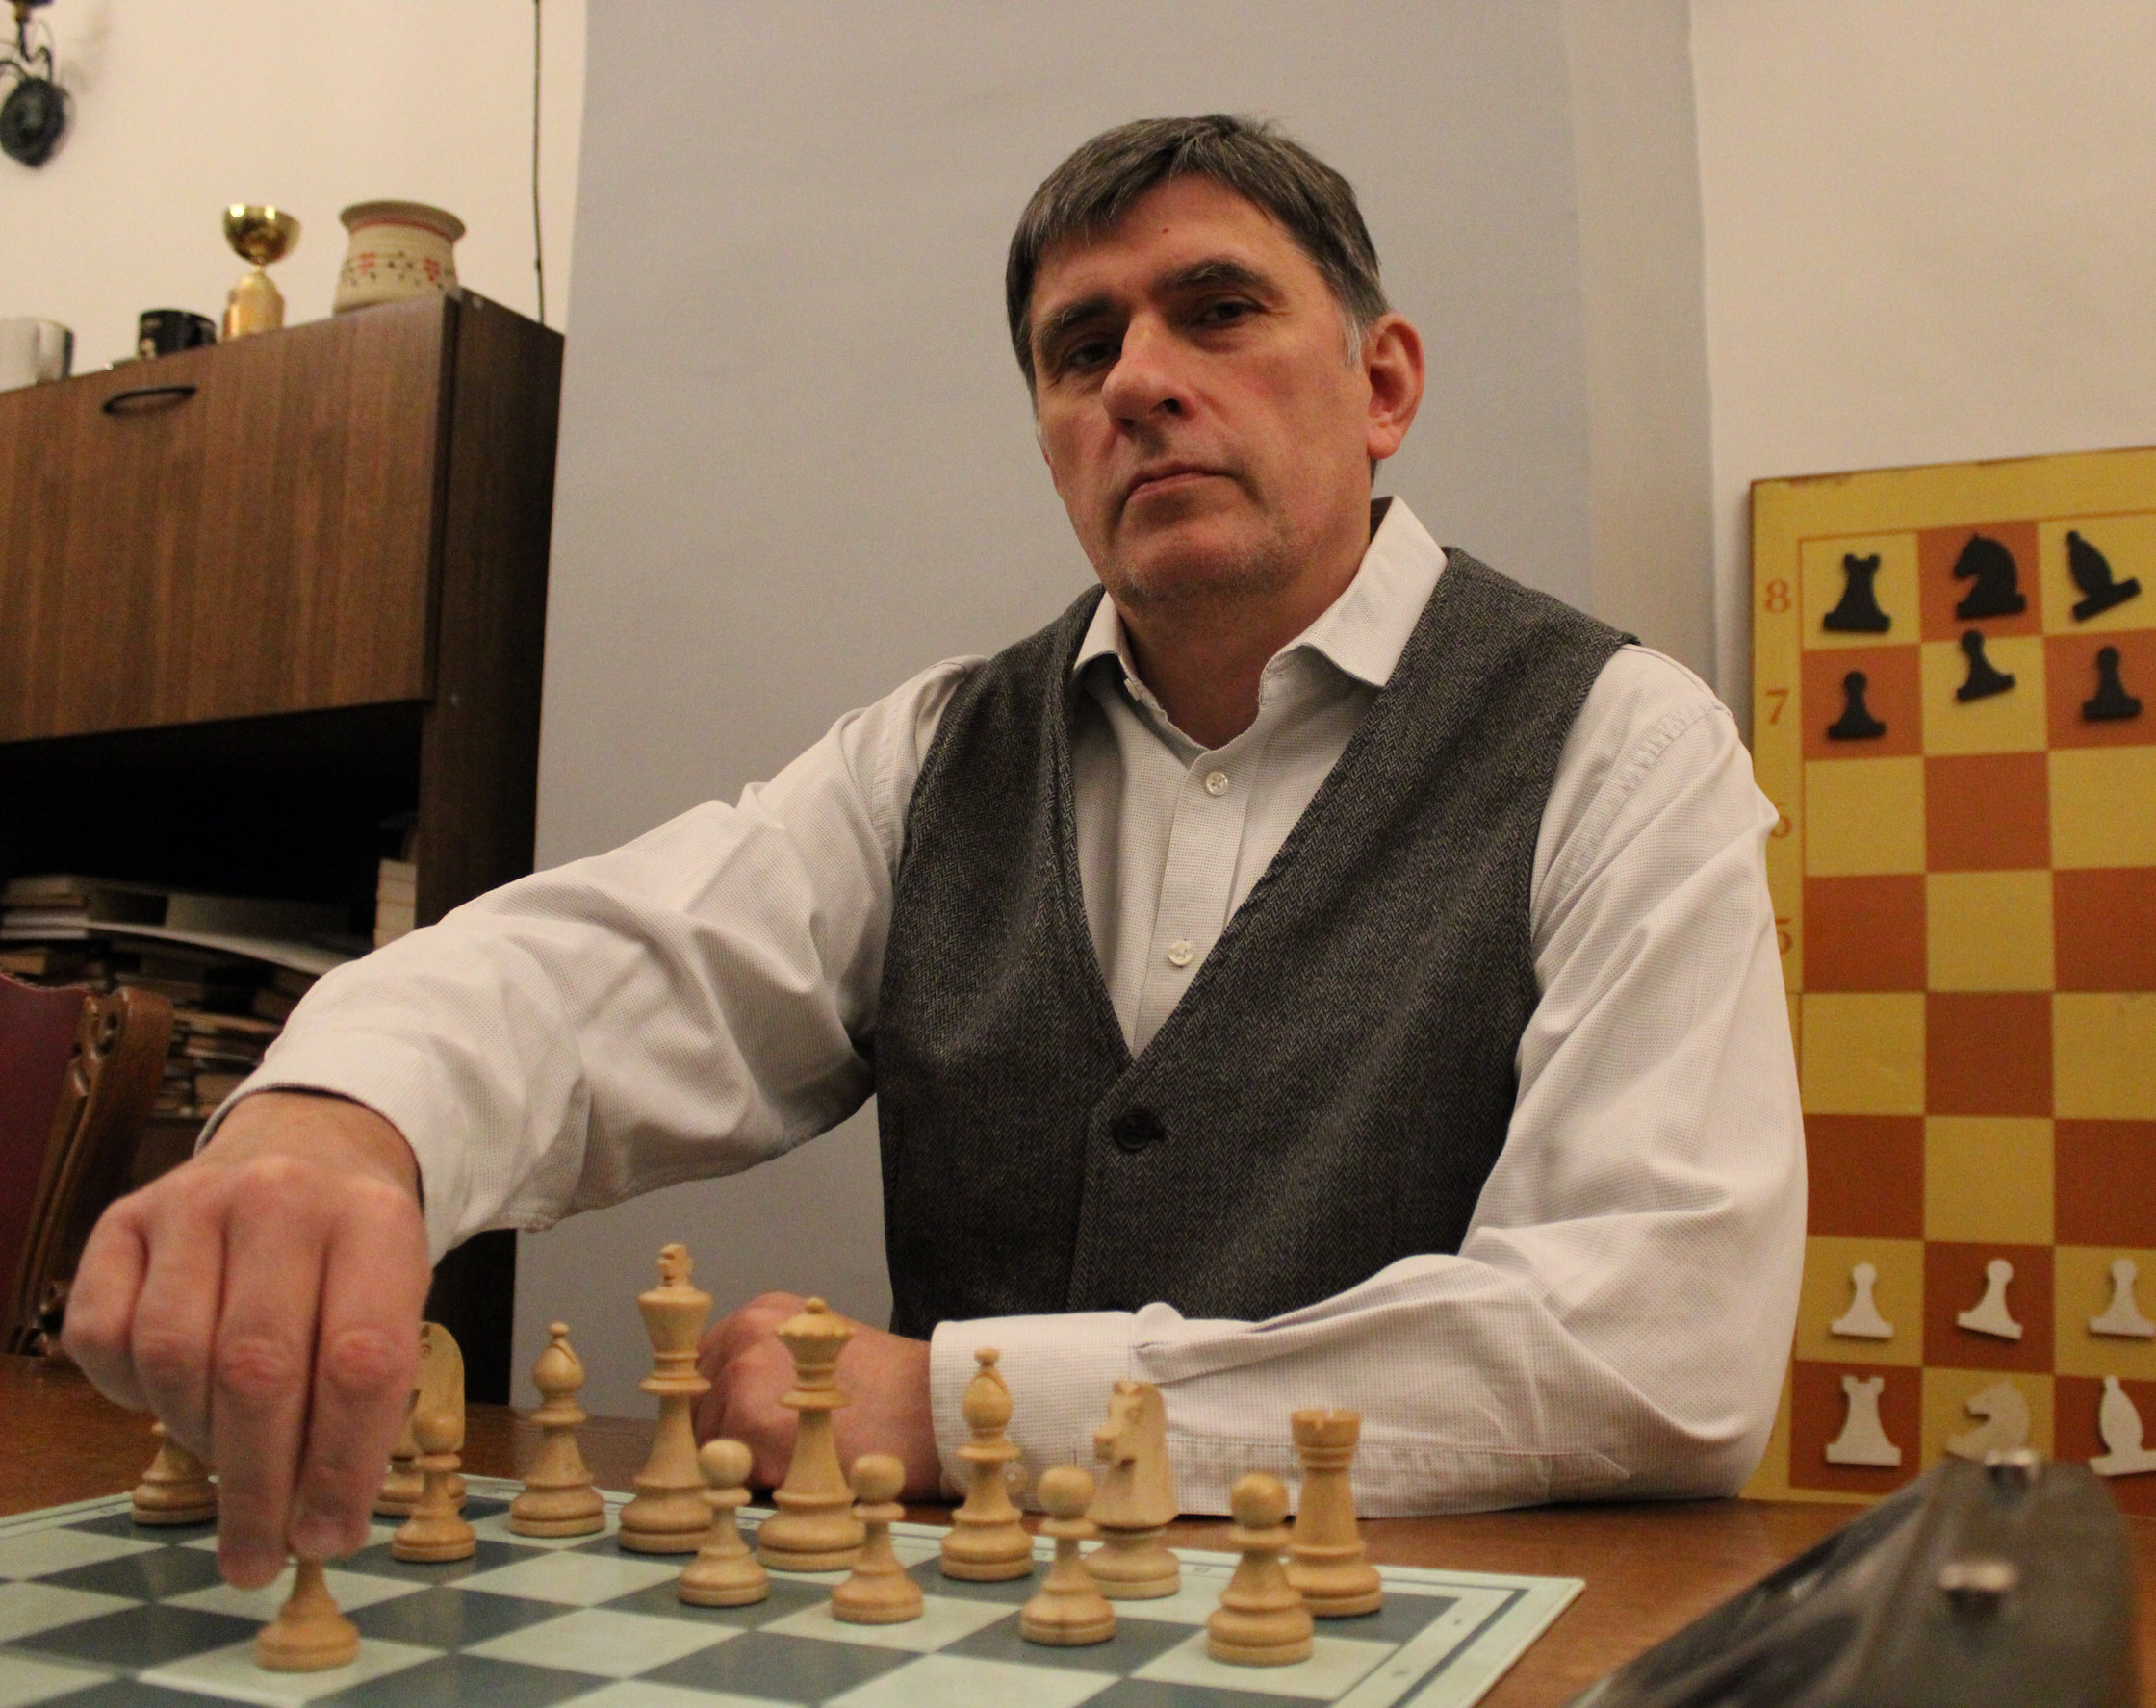 Шахматный тренер Михаил Рычагов делает первый ход за шахматной доской